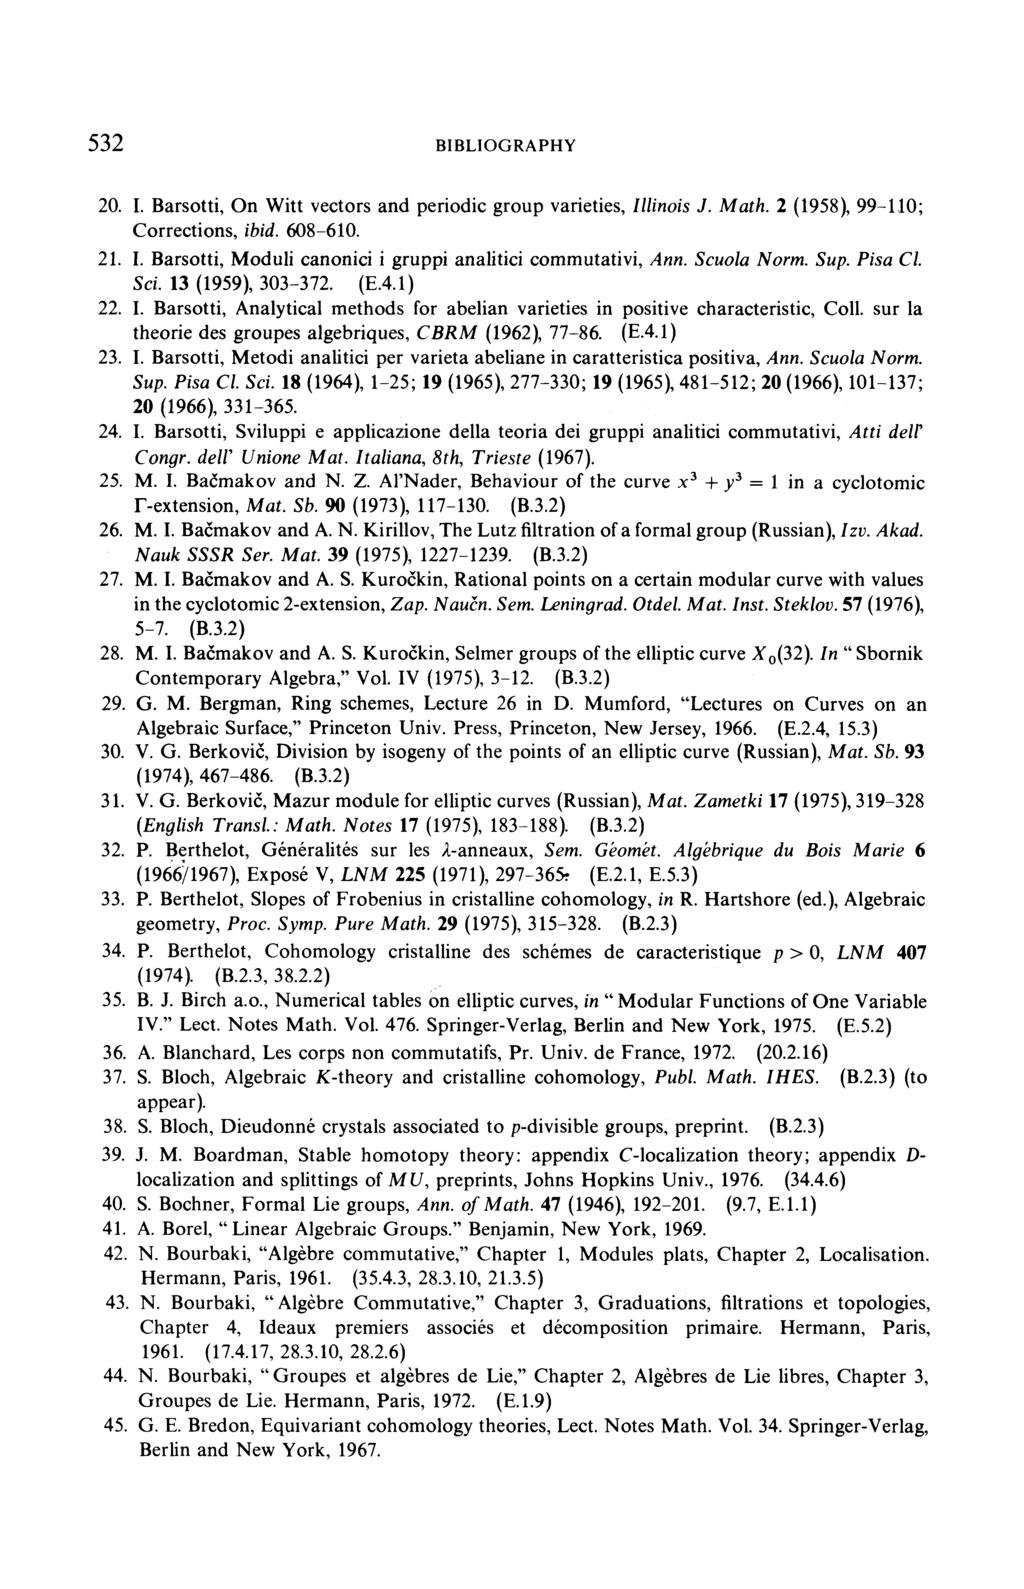 théorie des groupes algébriques, CBRM (1962), 77 86. (E.4.1) M. I. Bašmakov M. I. Bašmakov M. I. Bašmakov A. S. Kuroskin, ˇ M. I. Bašmakov A. S. Kuroskin, ˇ P.